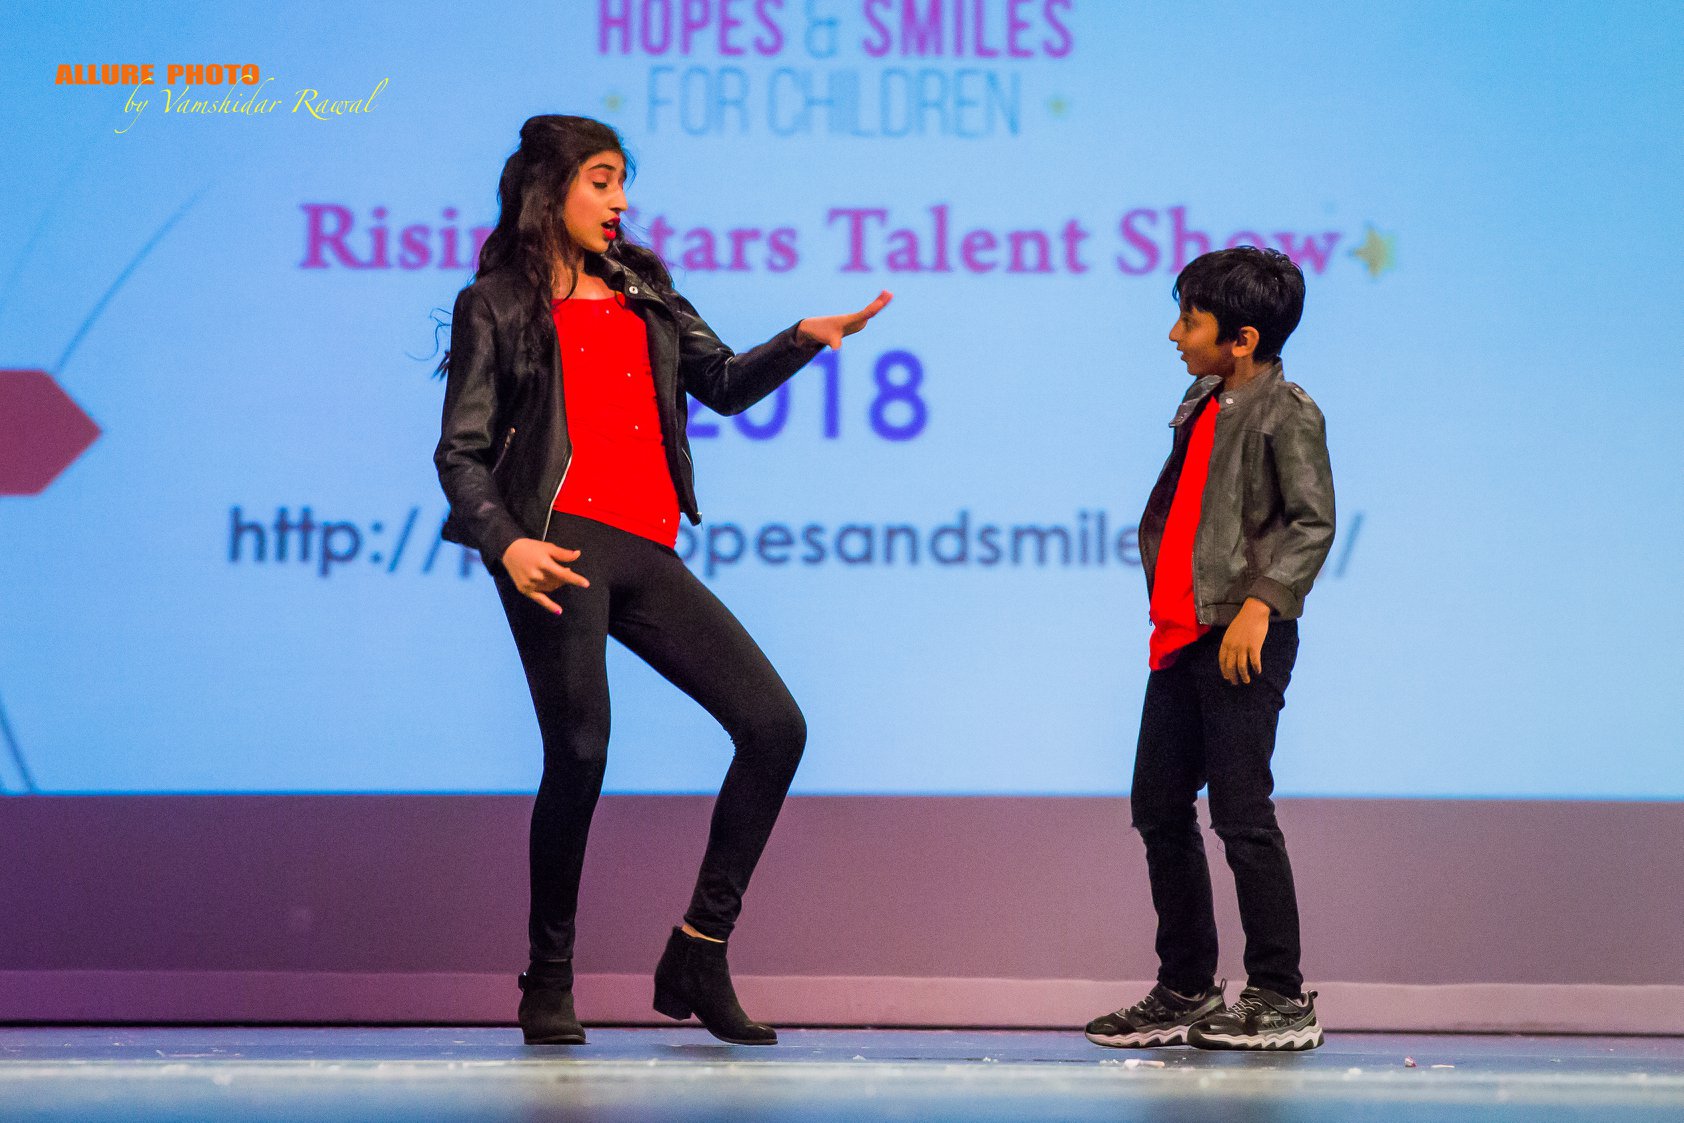 Rising Stars Talent show 2018